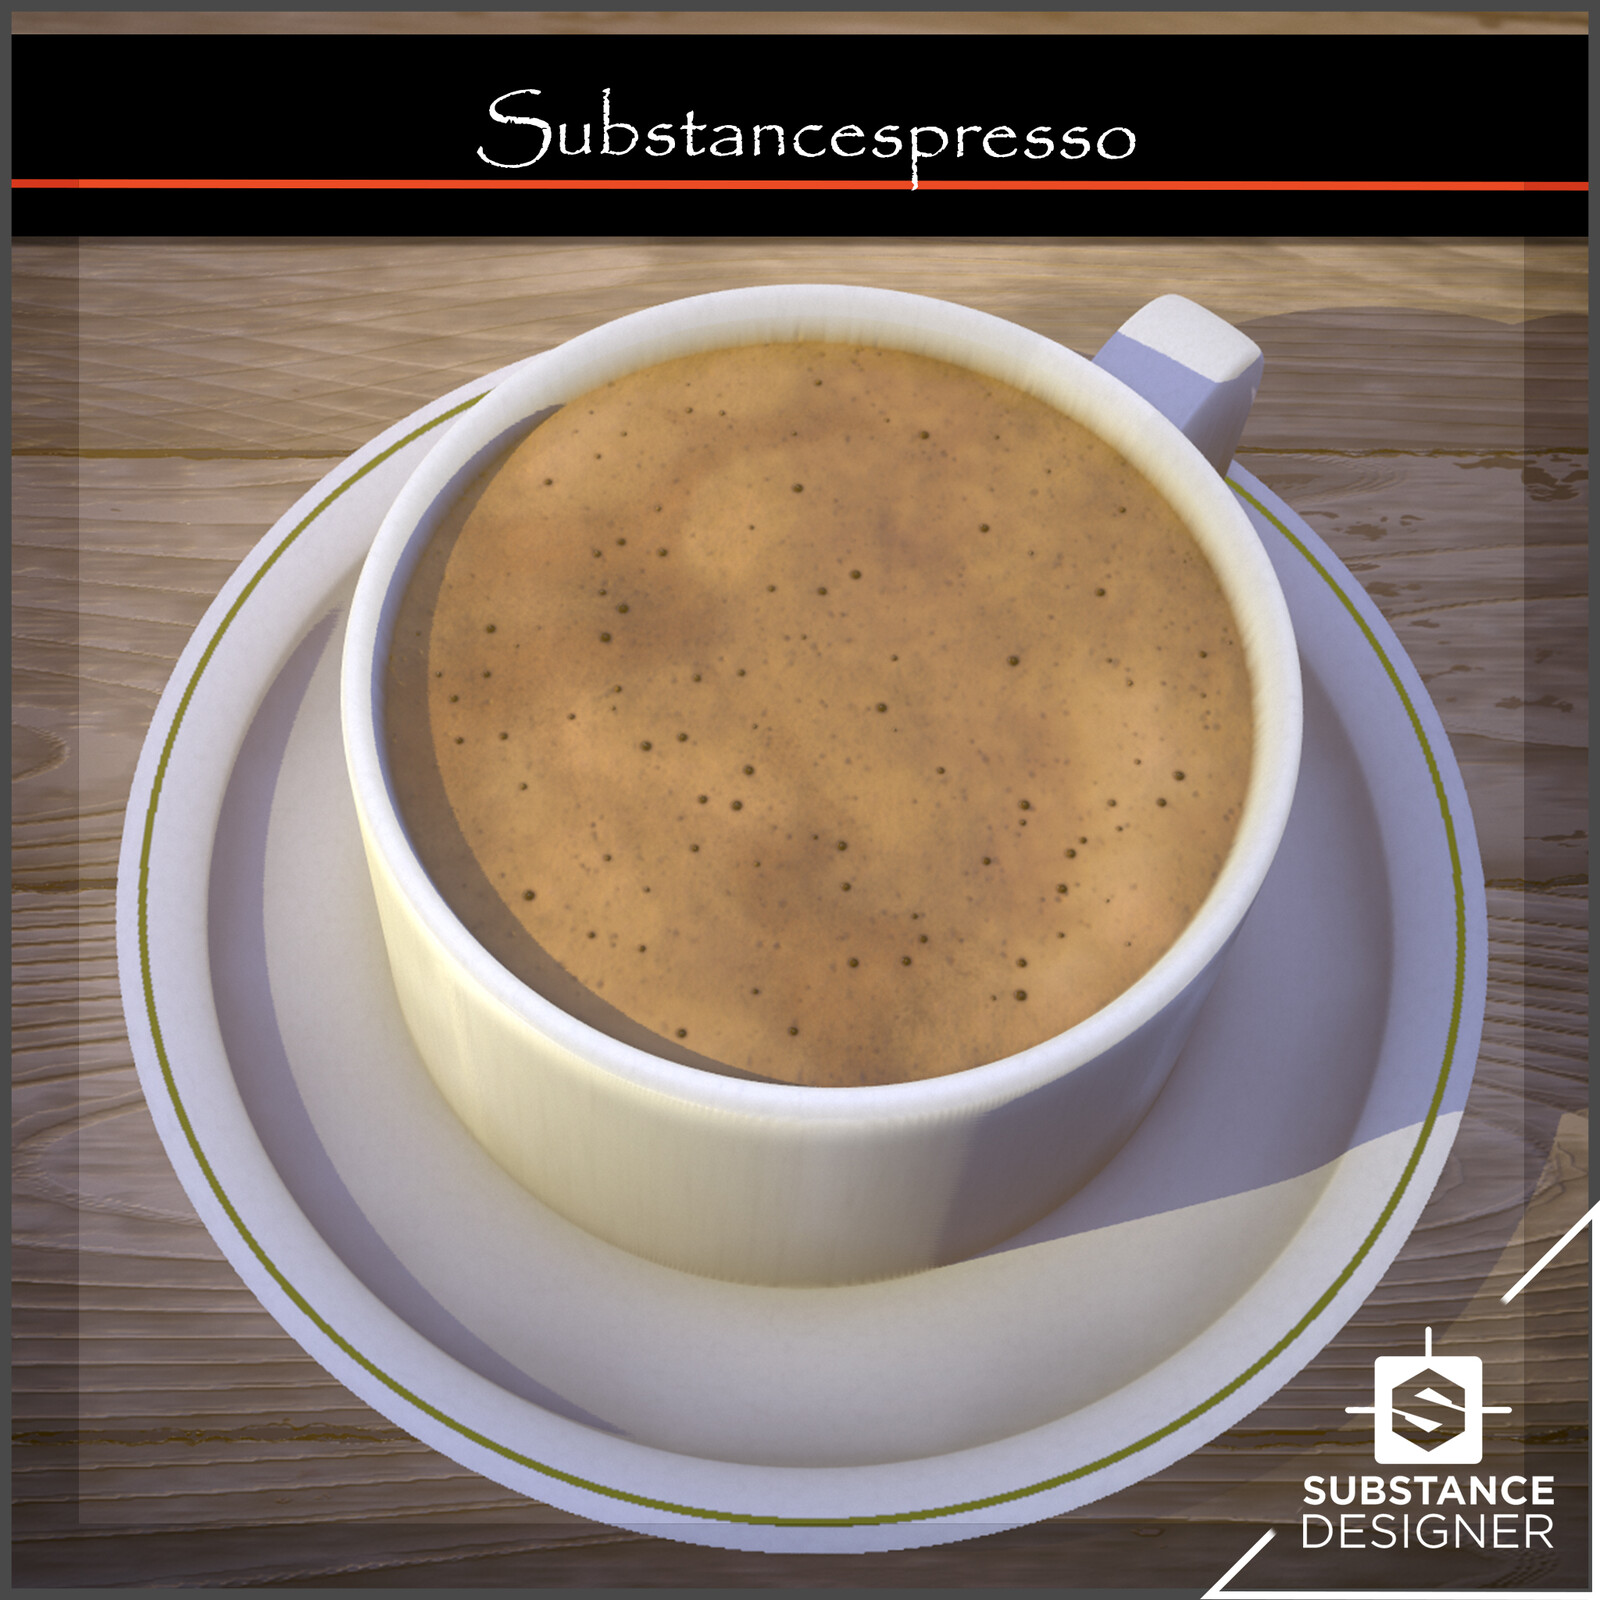 Substancespresso